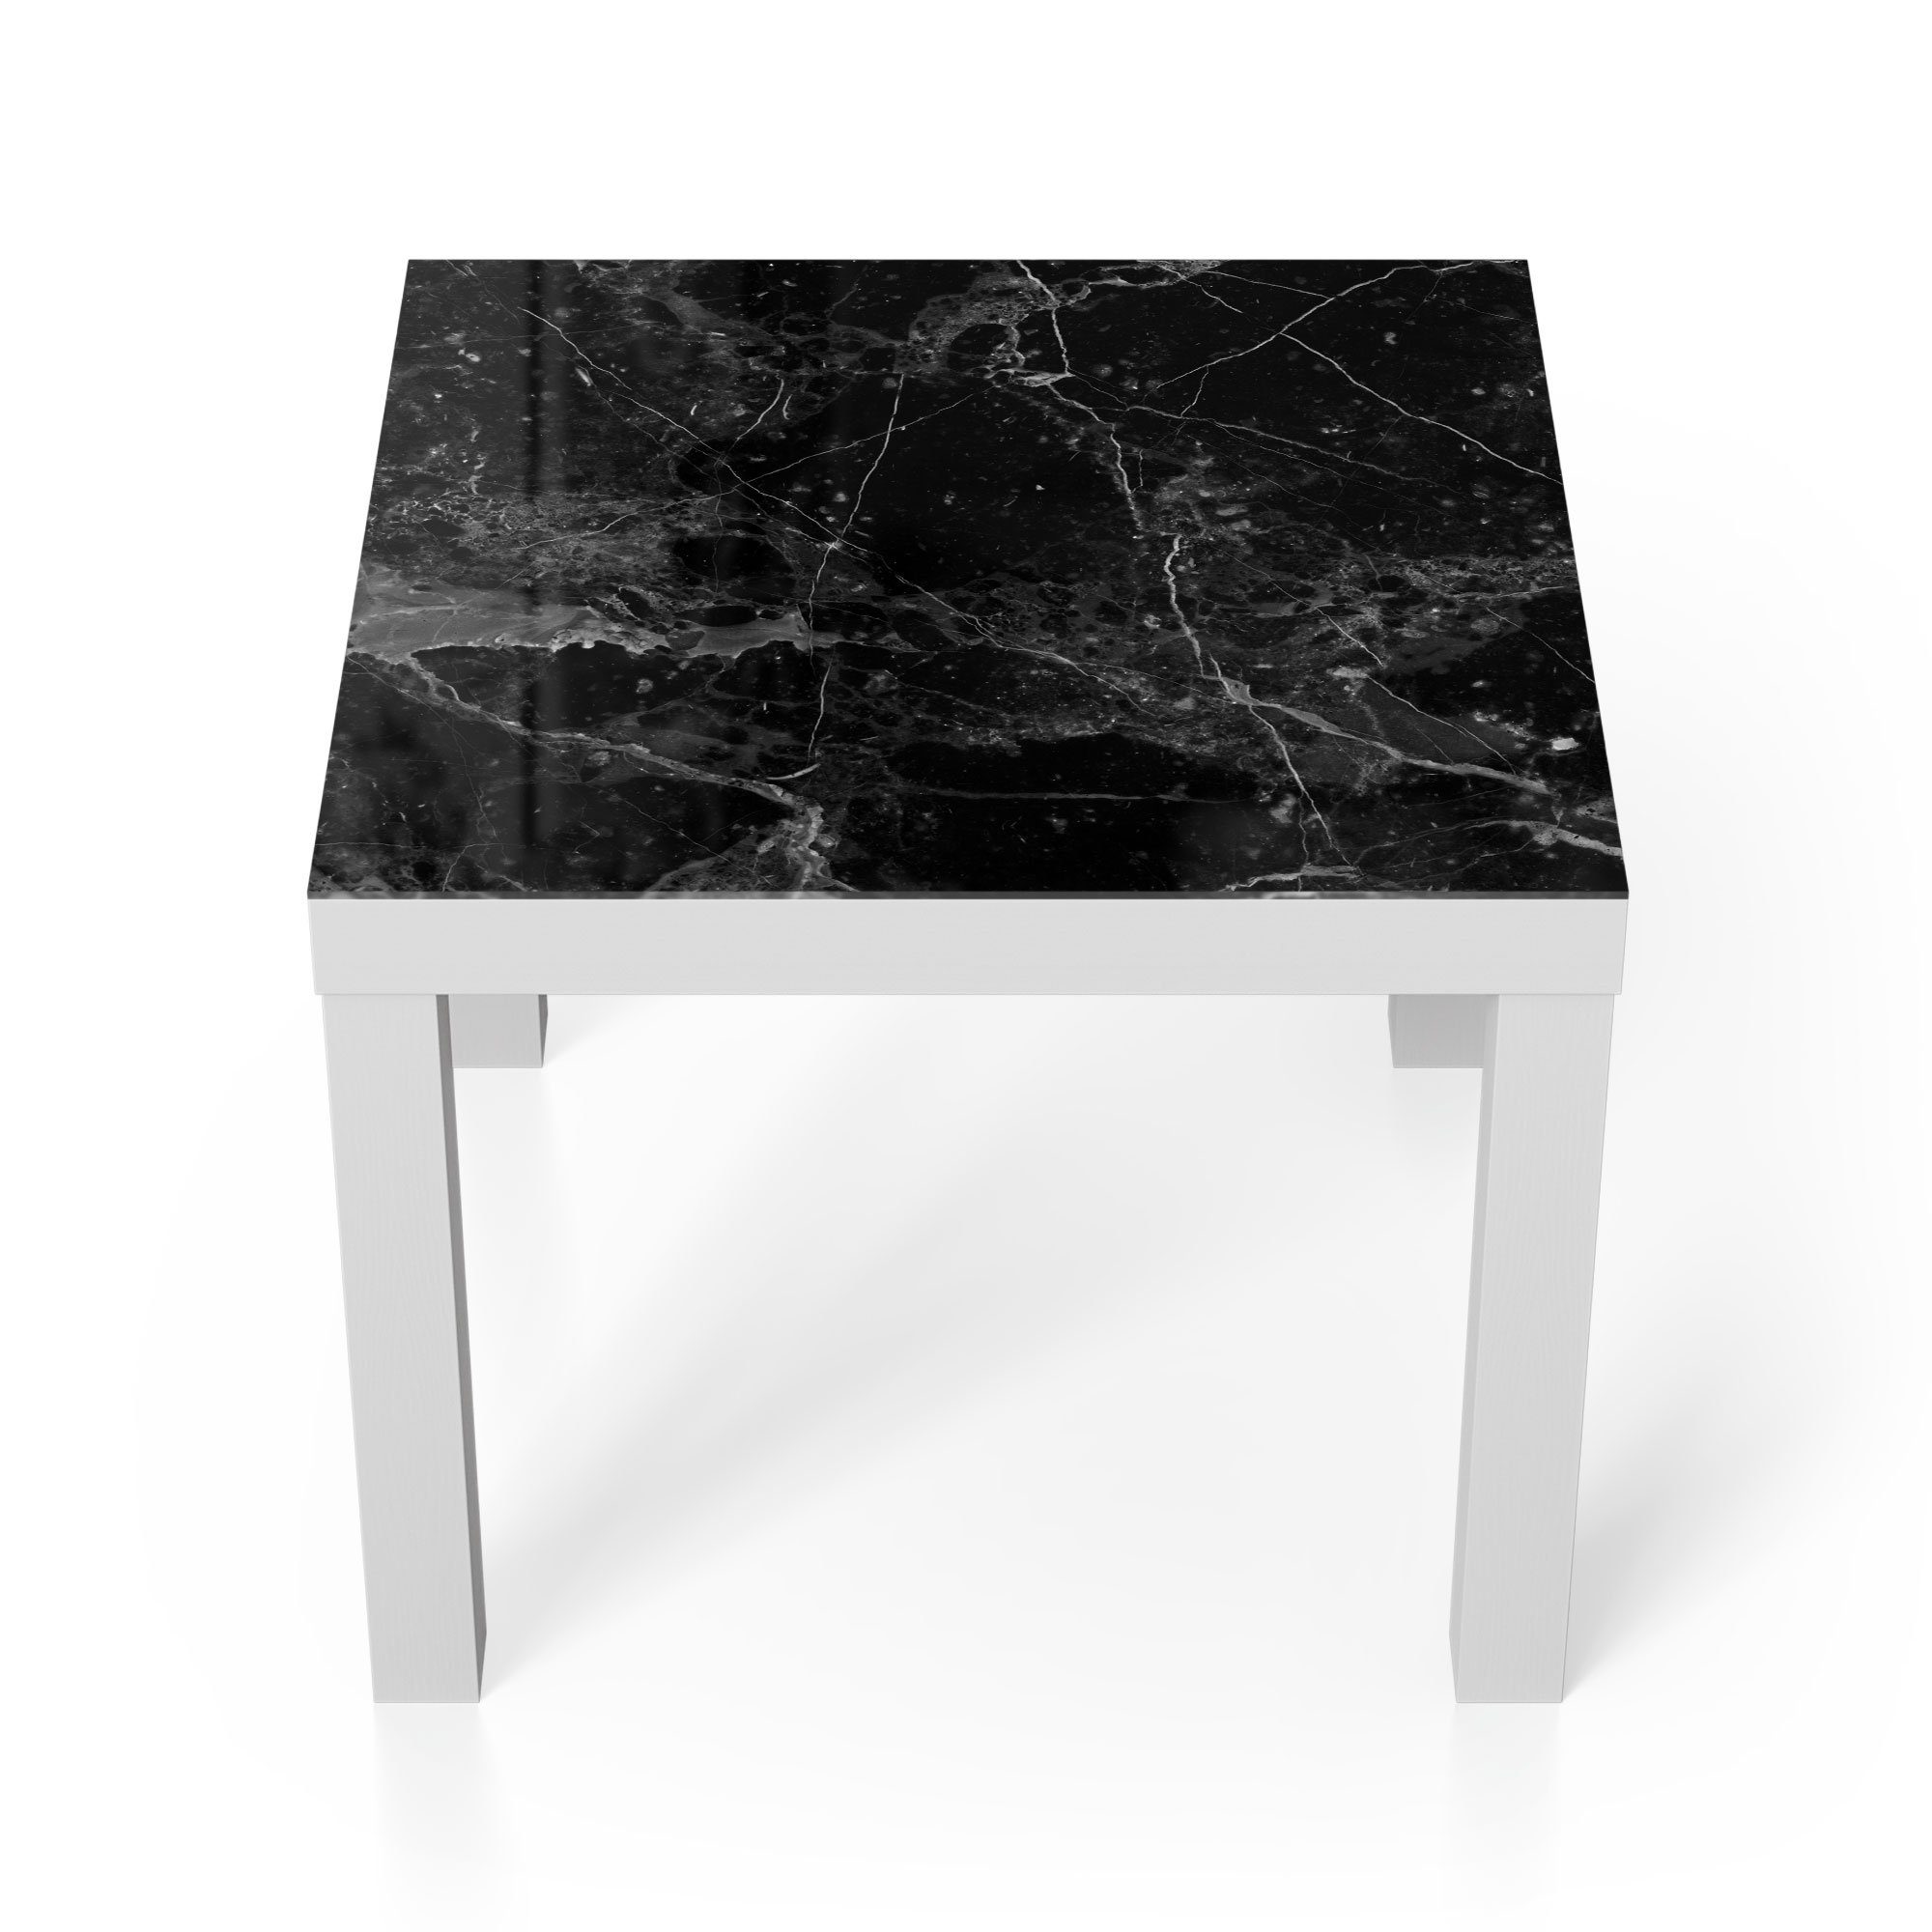 DEQORI Couchtisch 'Marmorplatte nah', Glas Beistelltisch Glastisch modern Weiß